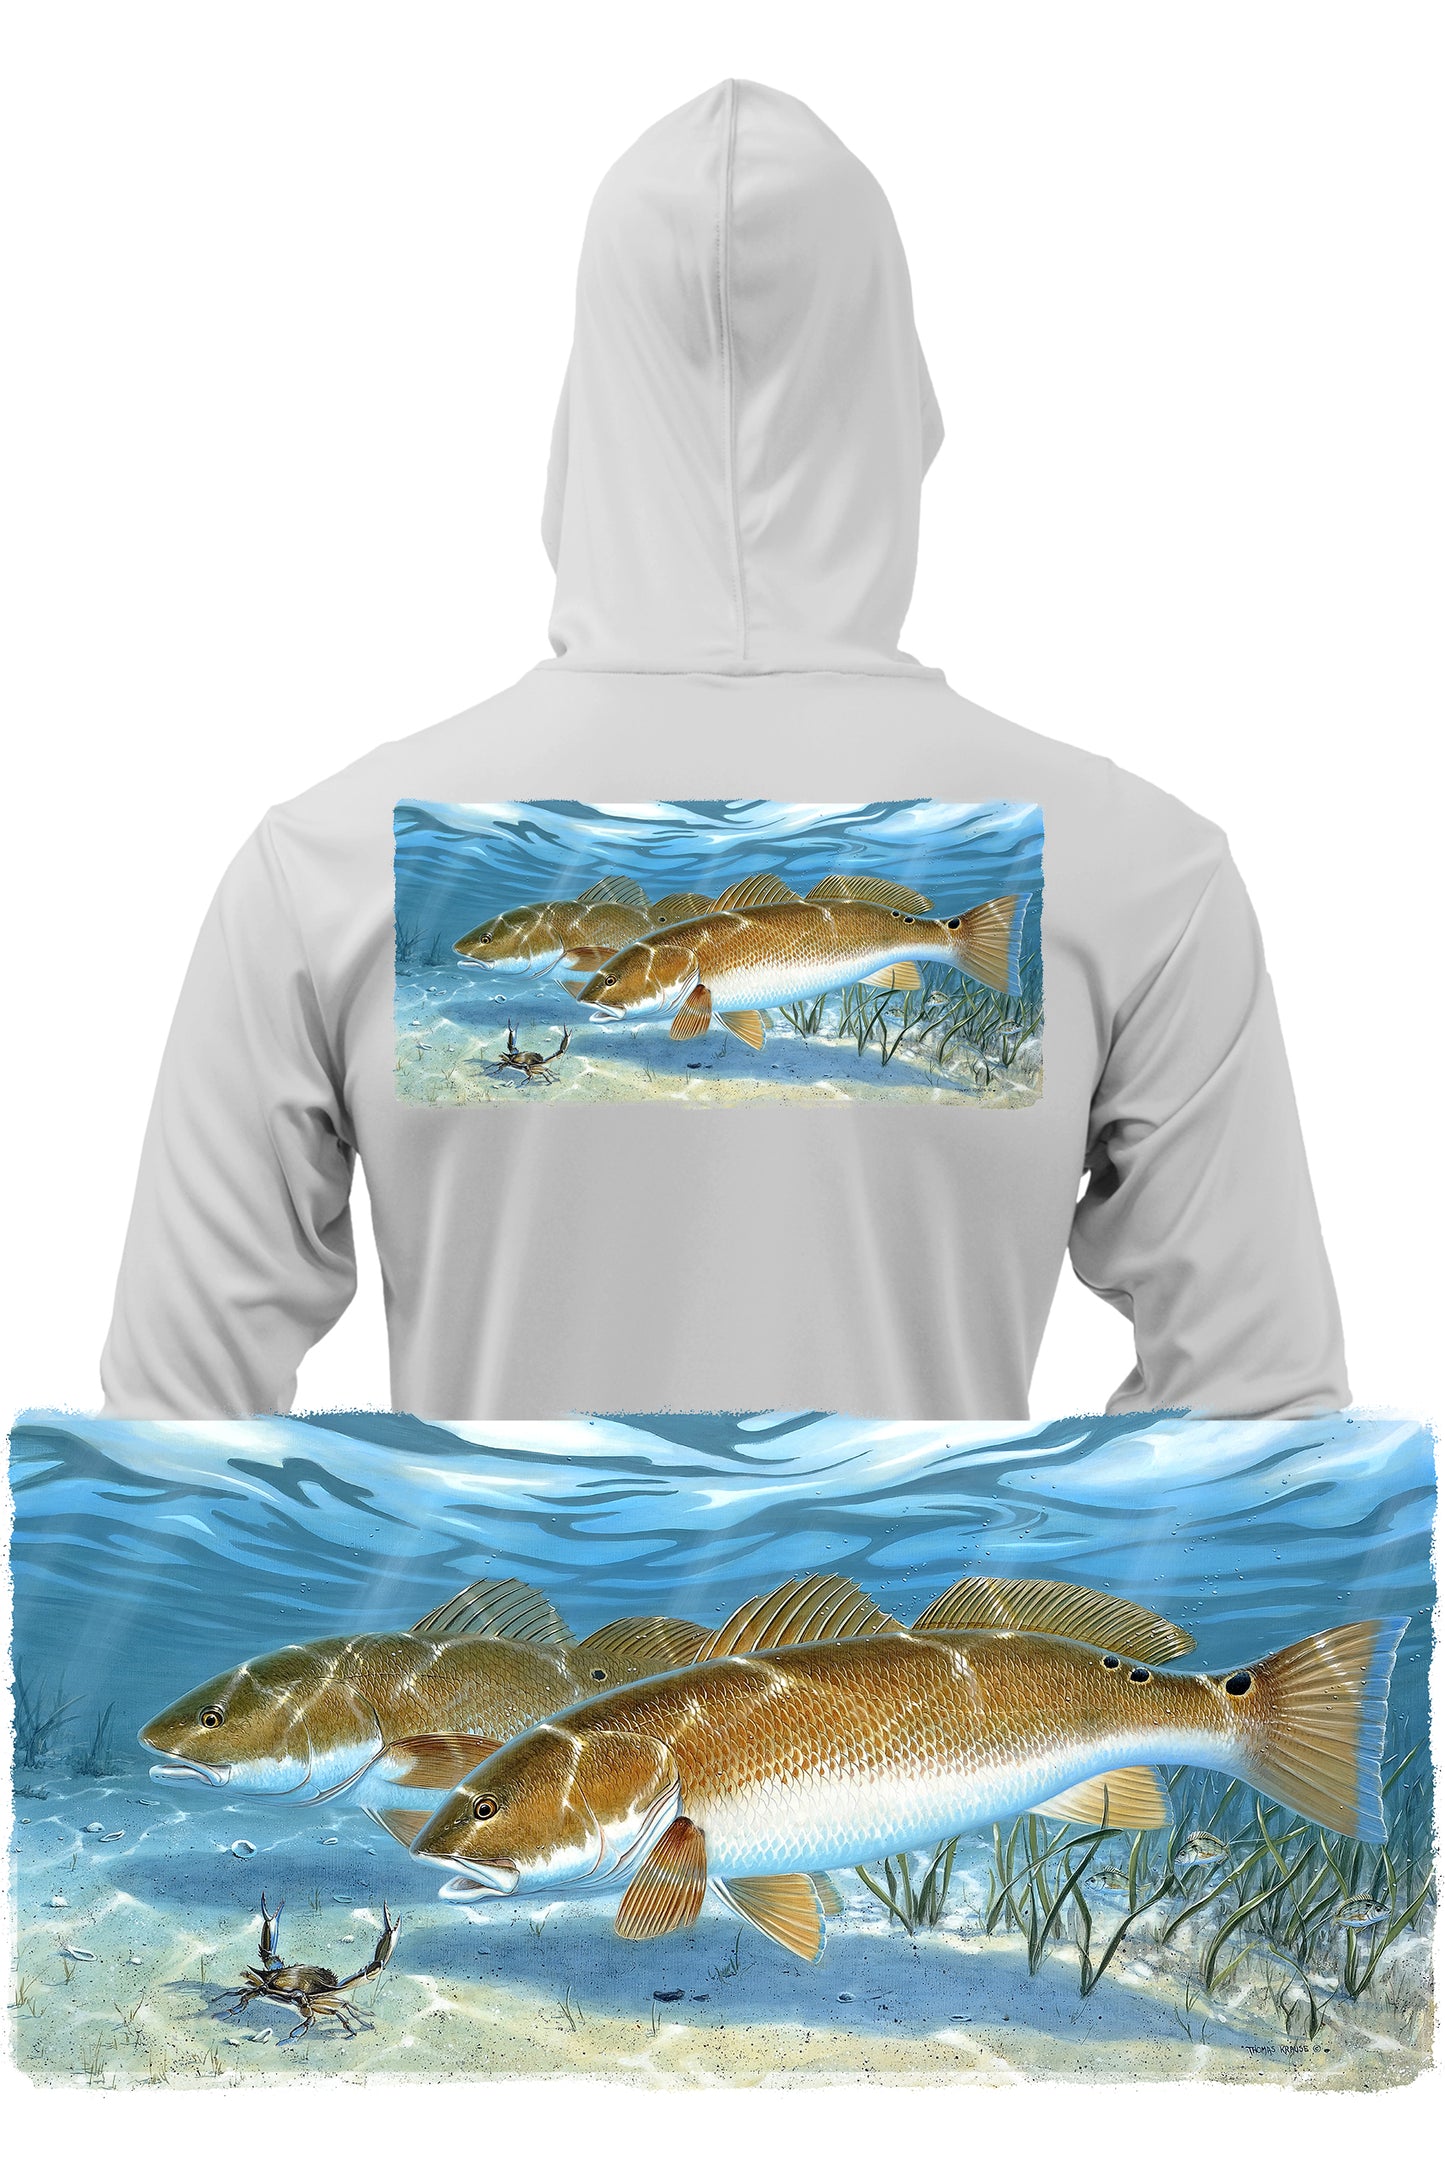 Fishing hoodie hoodie fishing bass fishing' Men's T-Shirt